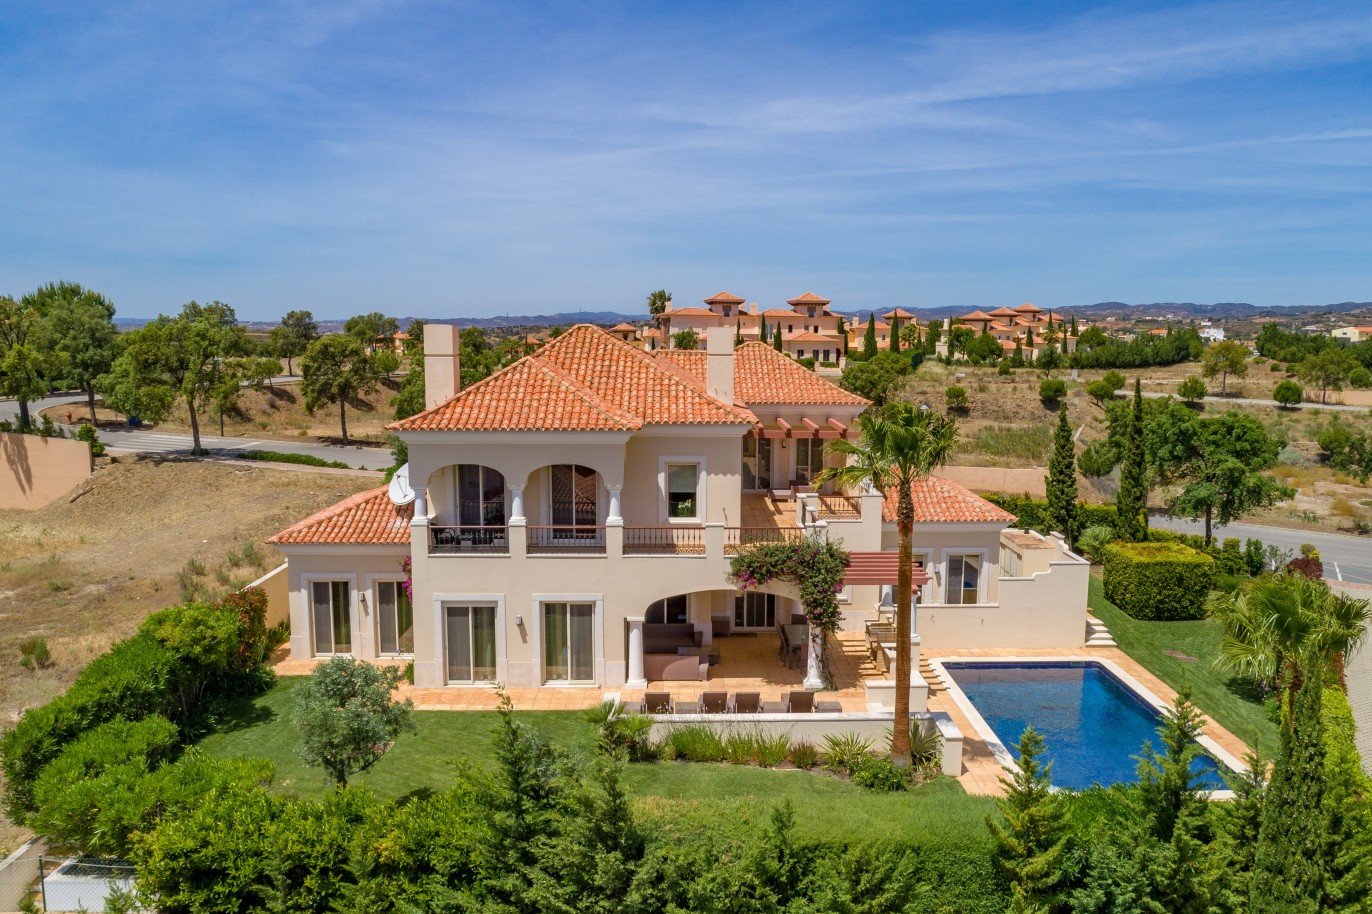 4 Bedroom Villa with pool for sale in Vila Real de Santo Antonio, Algarve_215713